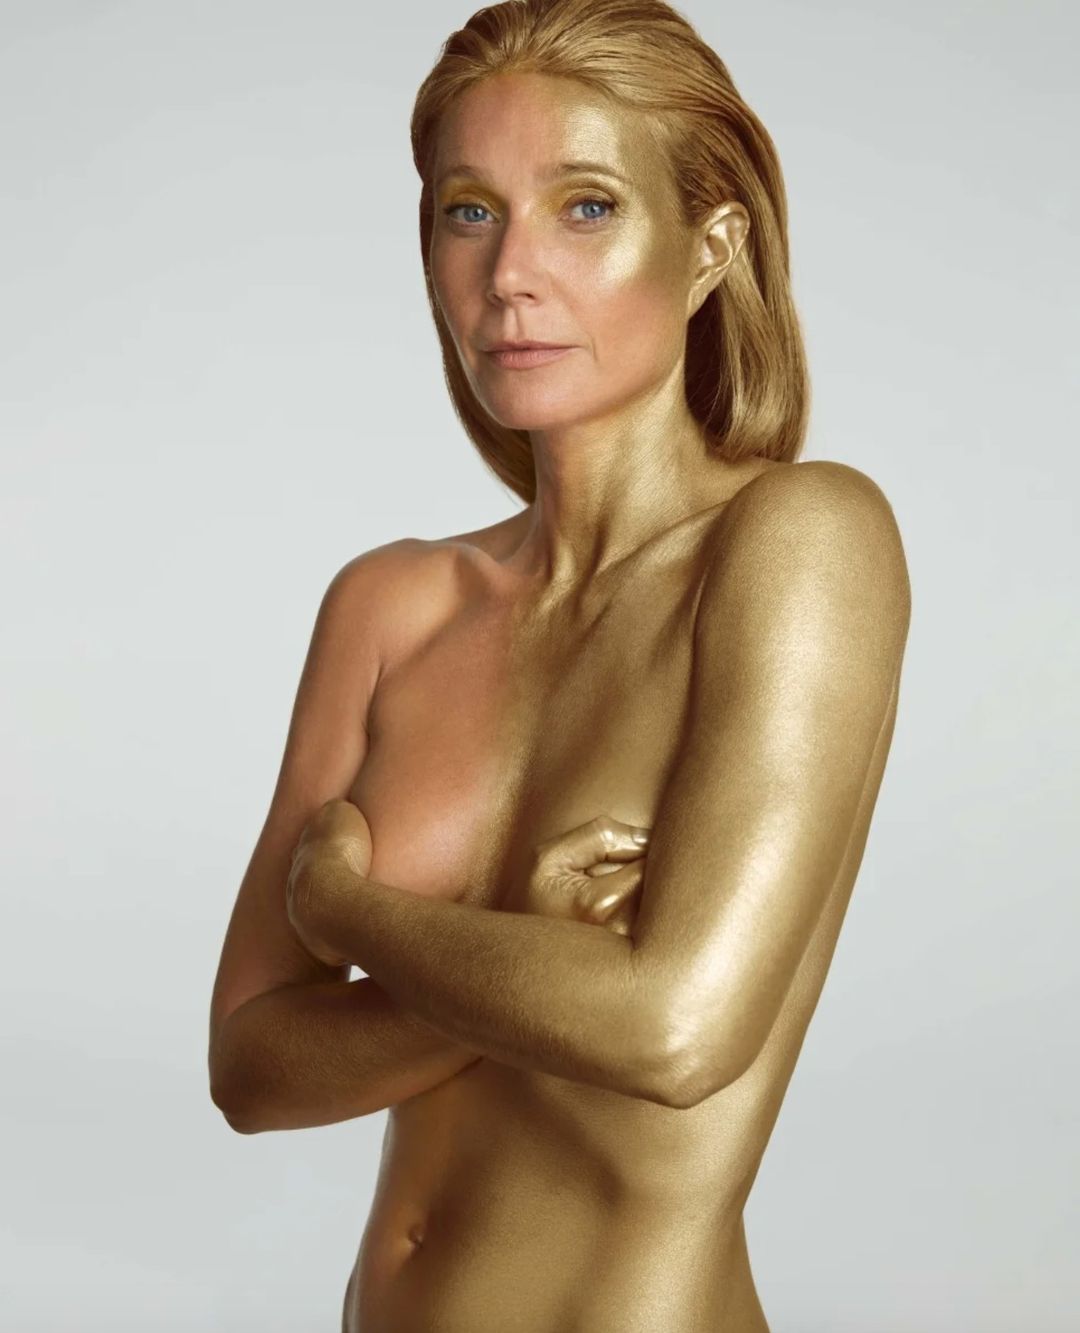 Без одягу та посипана золотом: Гвінет Пелтроу на 50-й день народження показала сміливі фото